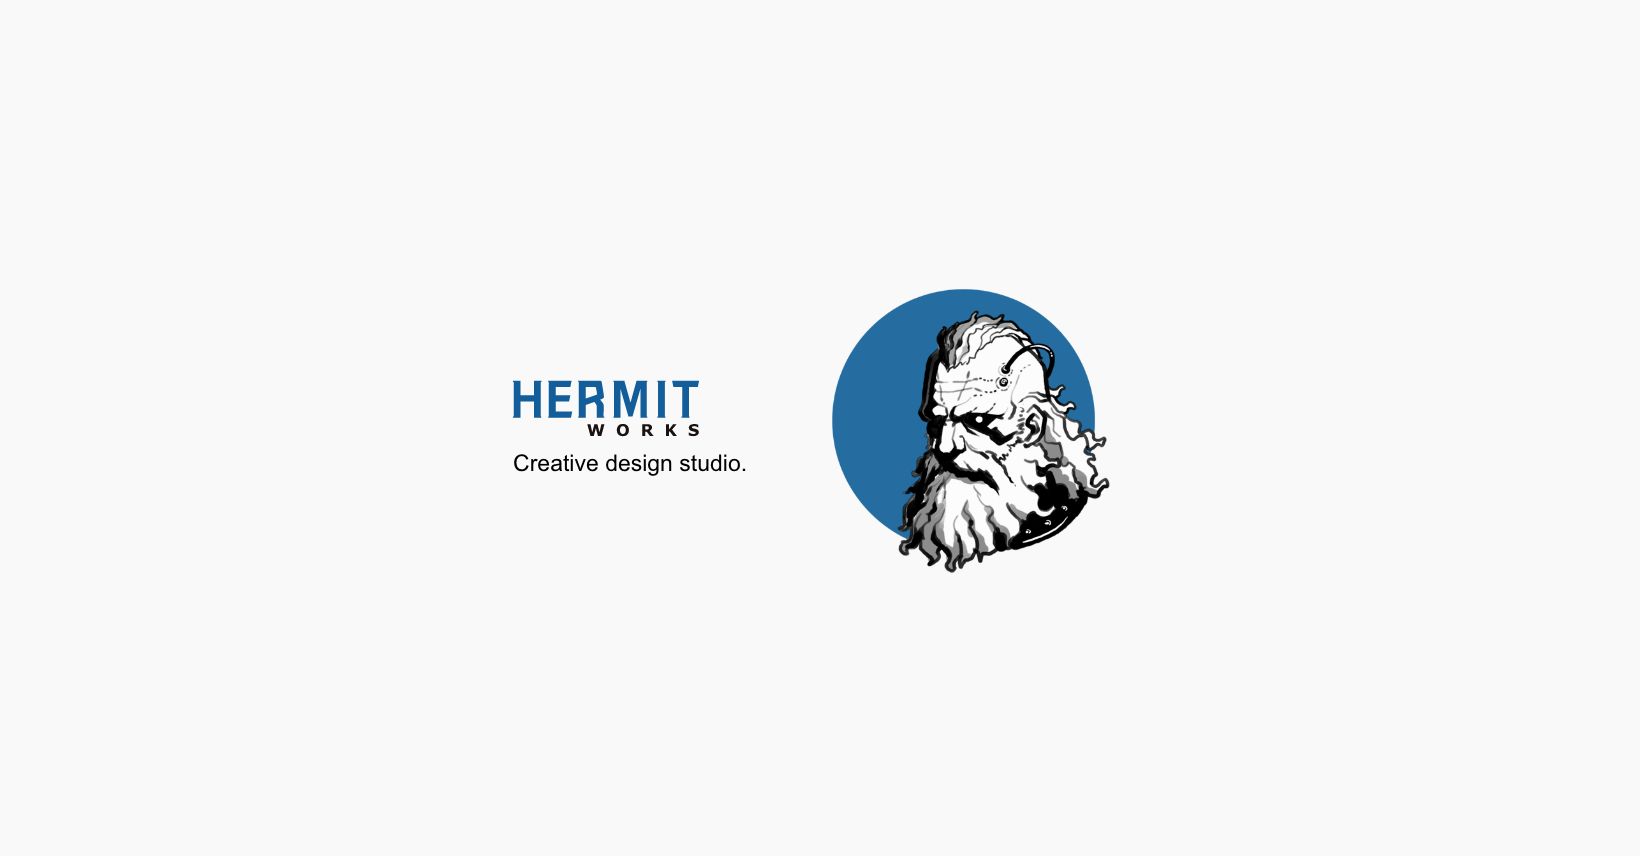 HERMIT WORKS